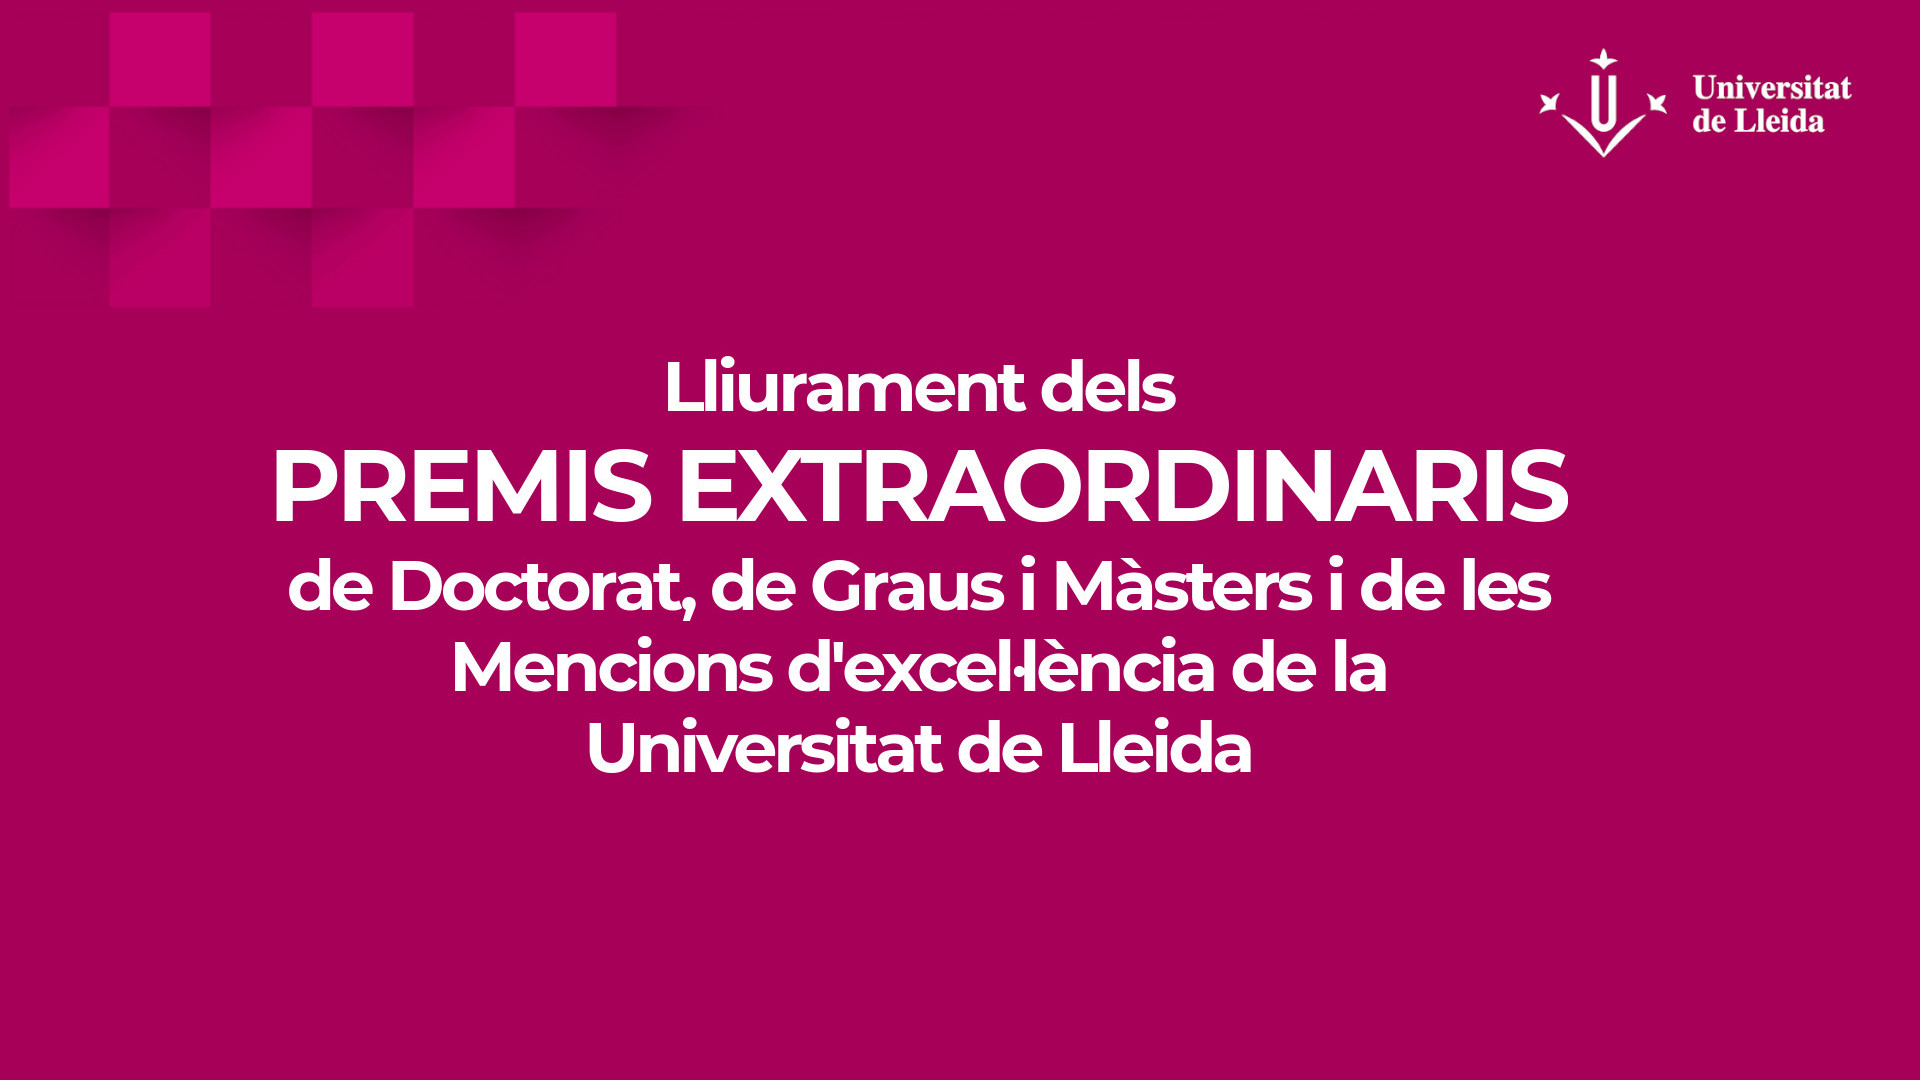 Lliurament dels Premis Extraordinaris de doctorat, premis extraordinaris de graus i màsters i mencions d'excel·lència de la Universitat de Lleida